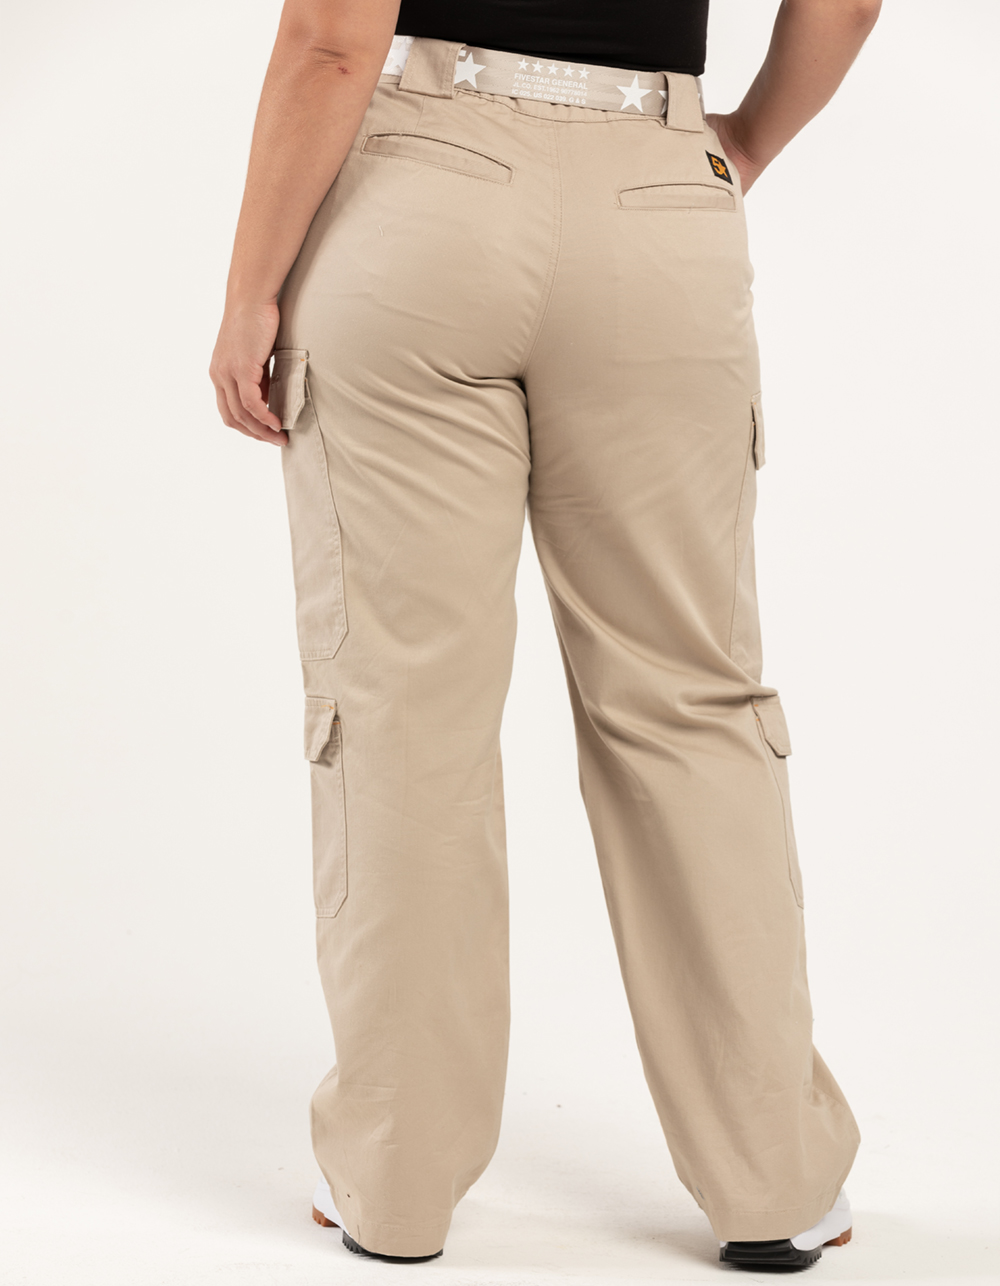 Women's Plain Front Cotton Pant - Five Star Enterprise